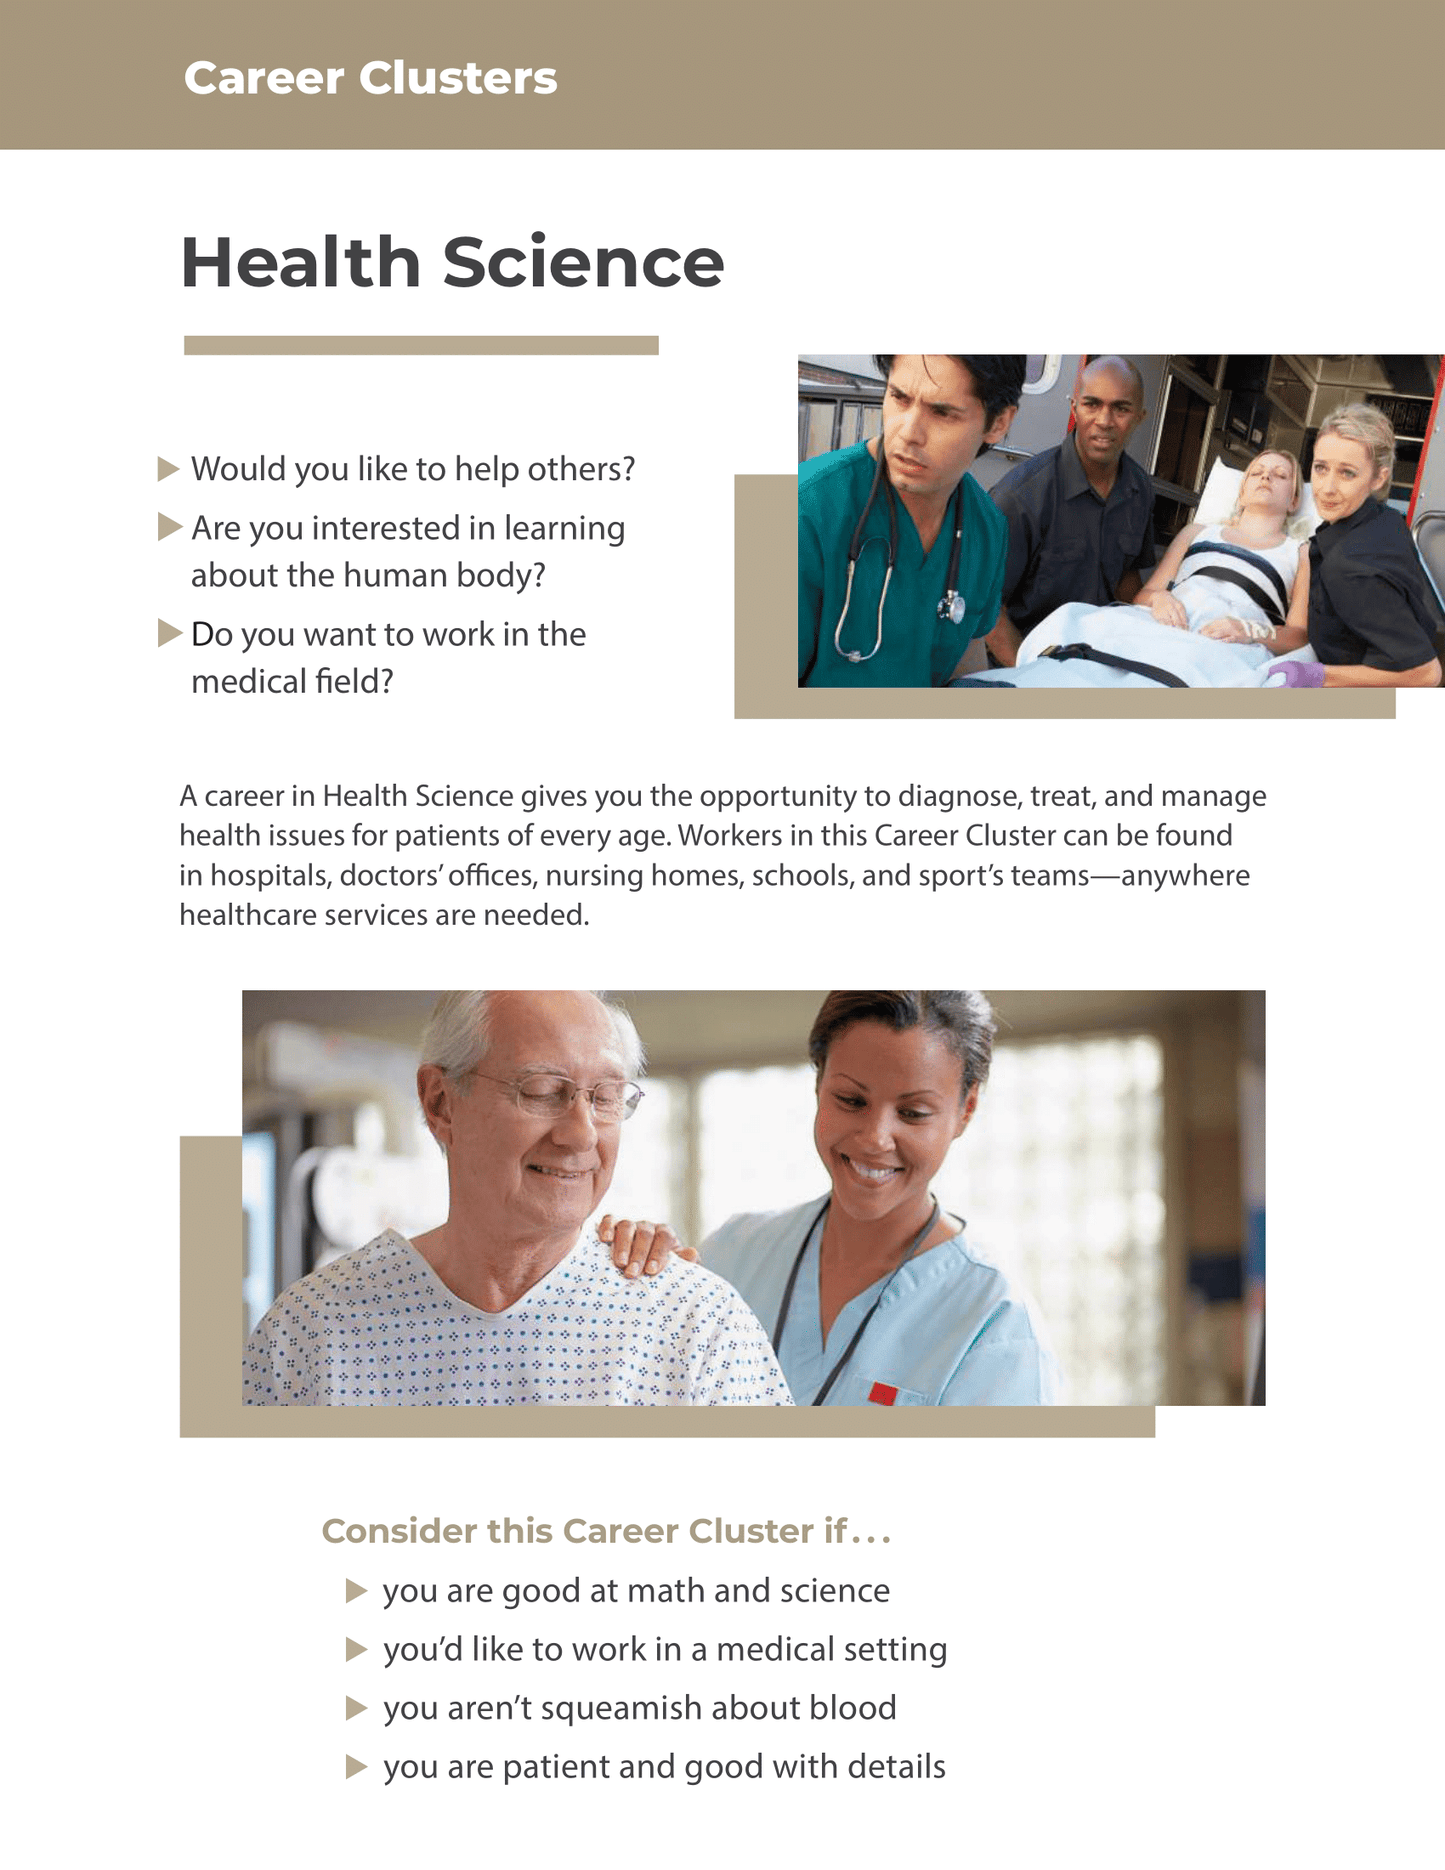 Career Clusters - Health Science